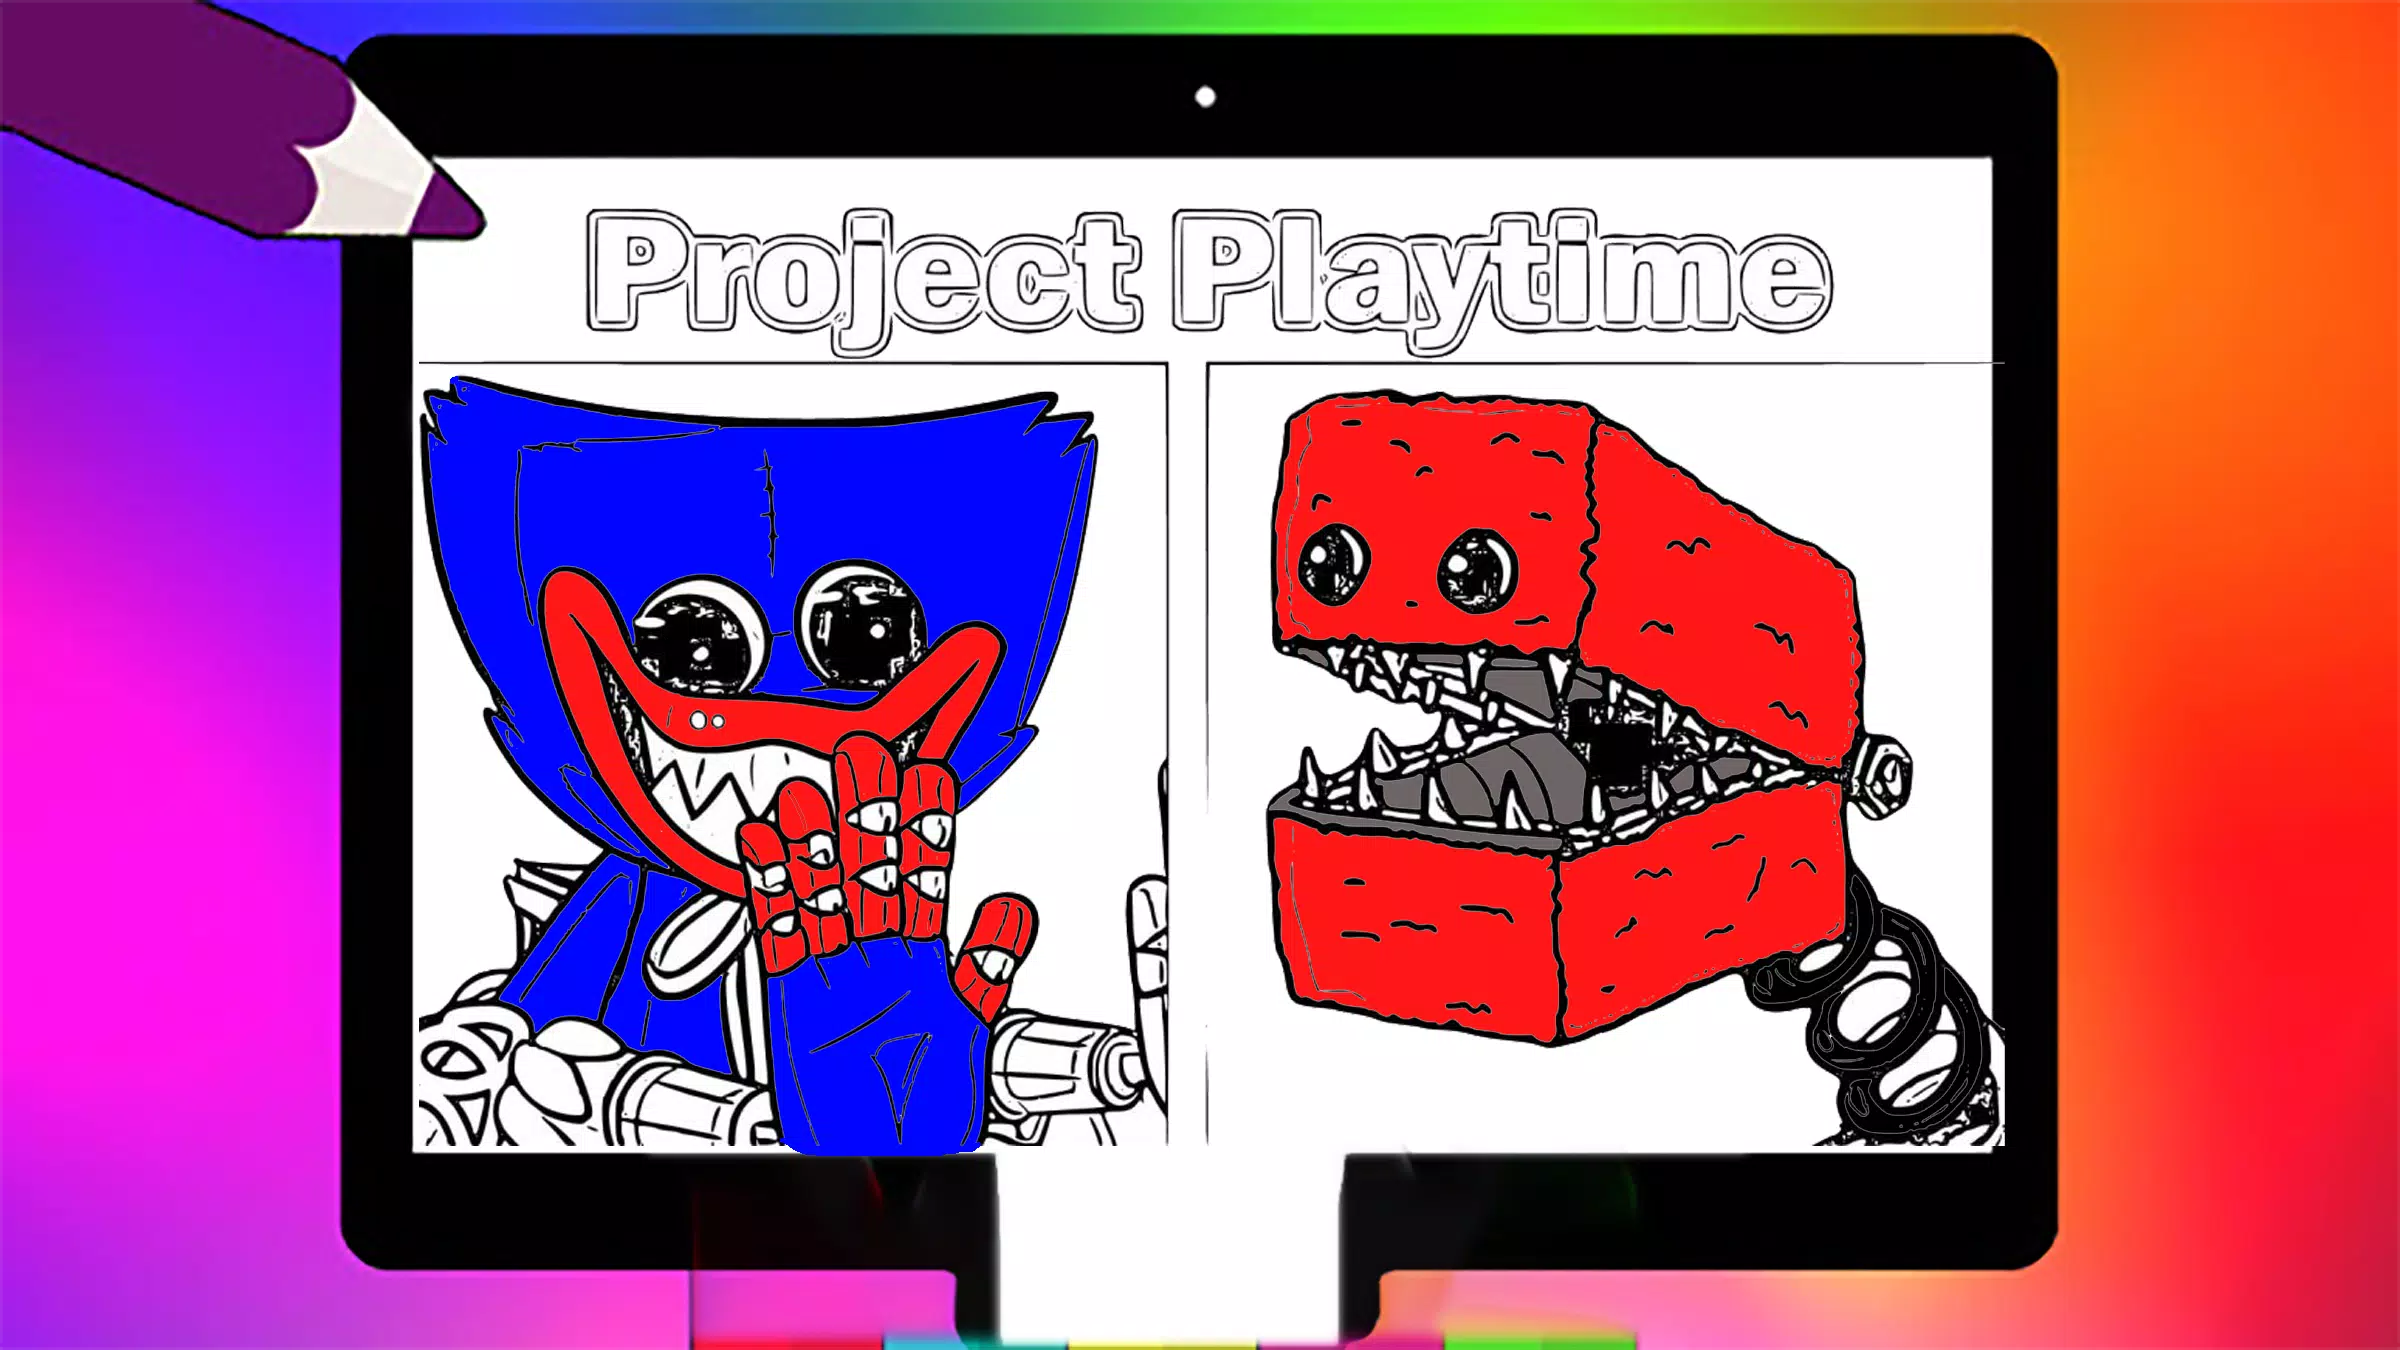 Desenhos para colorir do Monstro Huggy Wuggy da Poppy Playtime - Desenhos  para colorir gratuitos para impressão